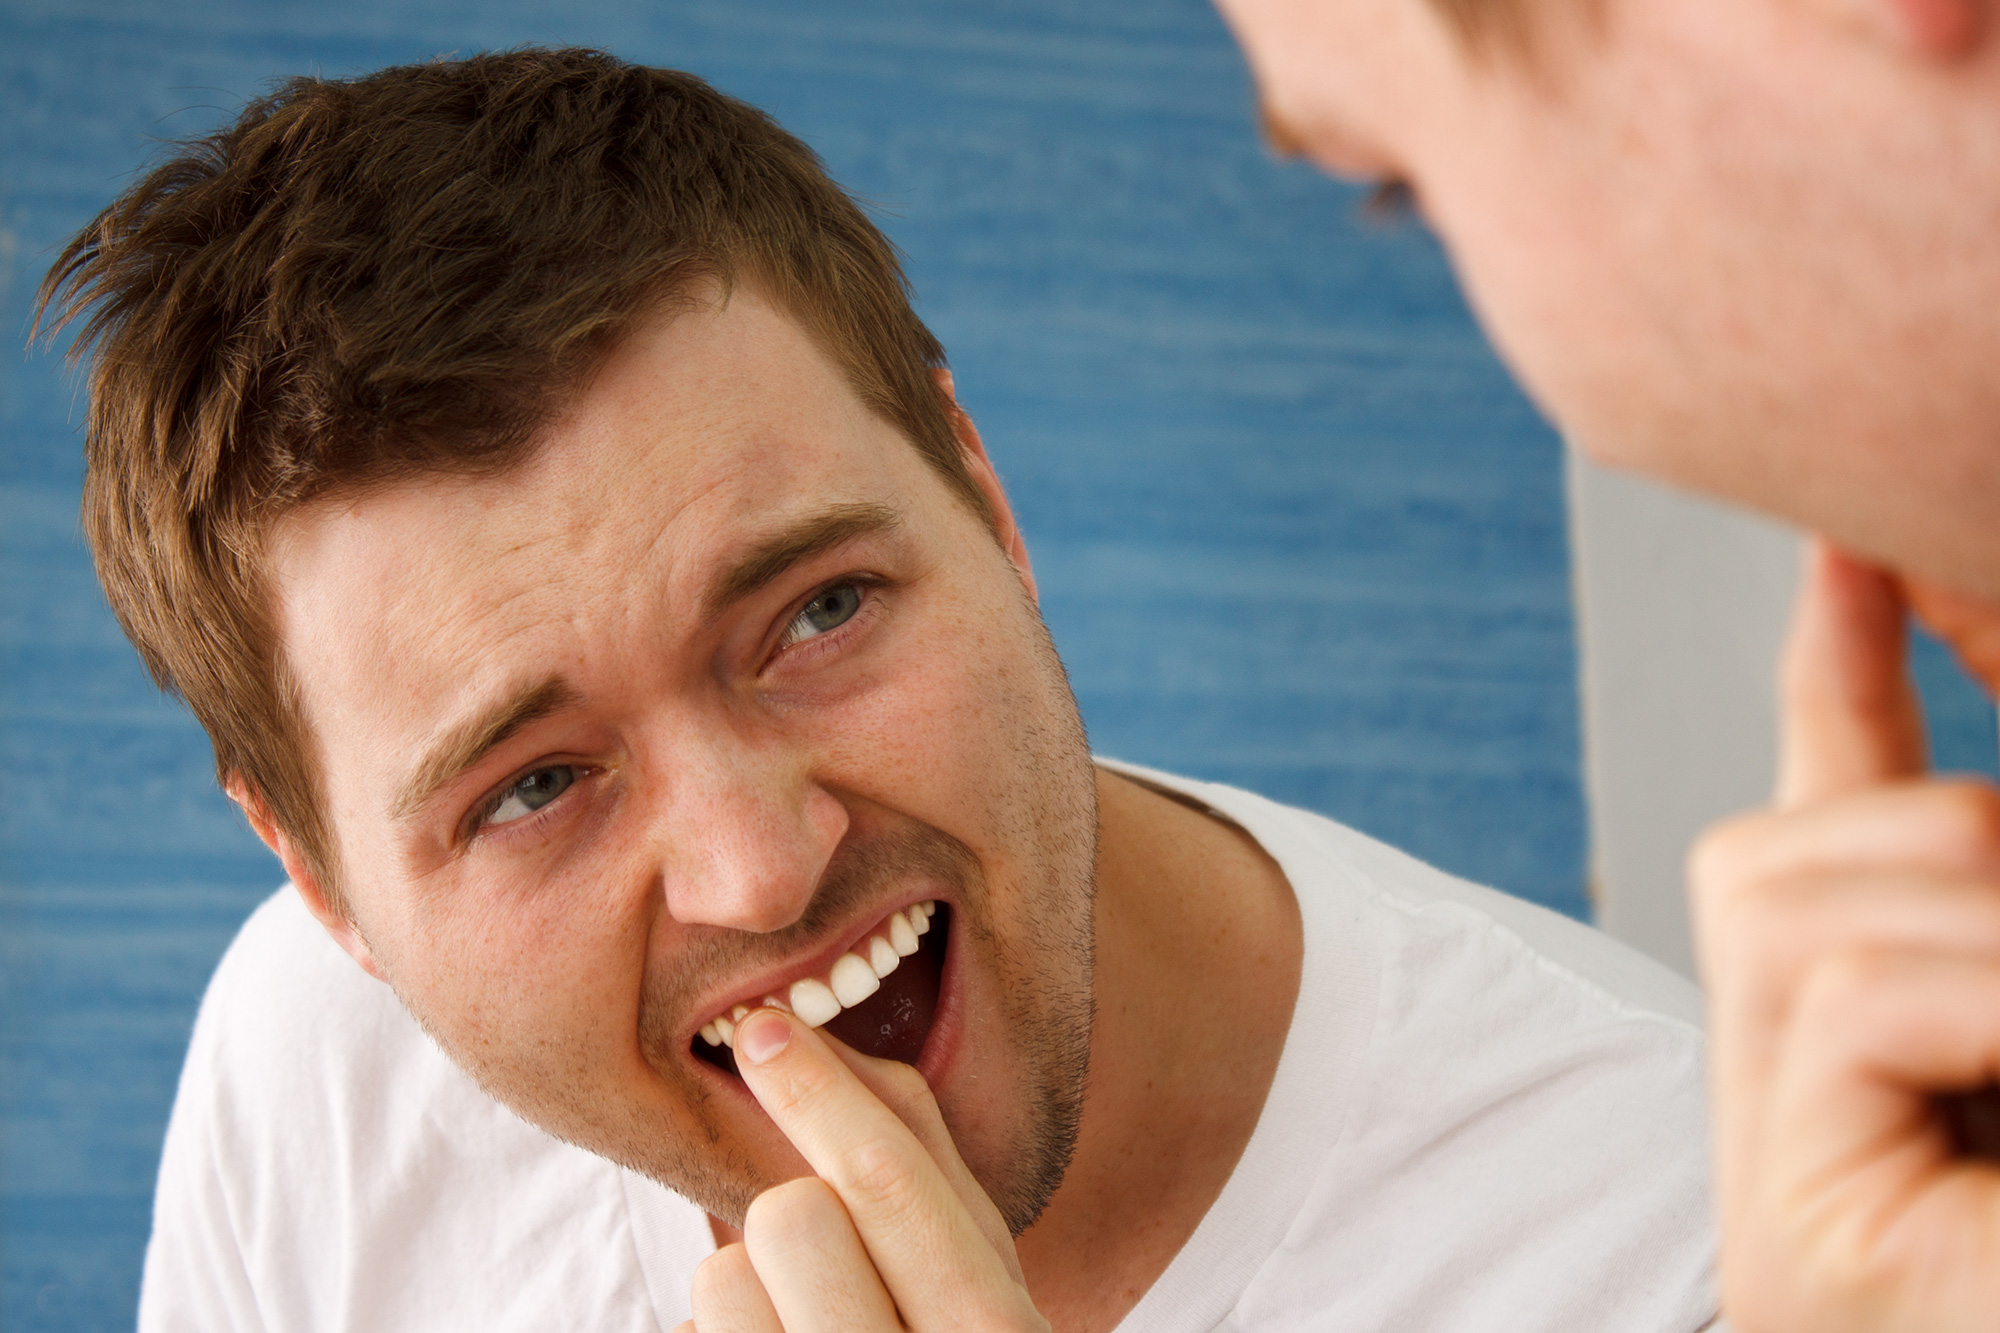 Gum Disease and Loose Teeth